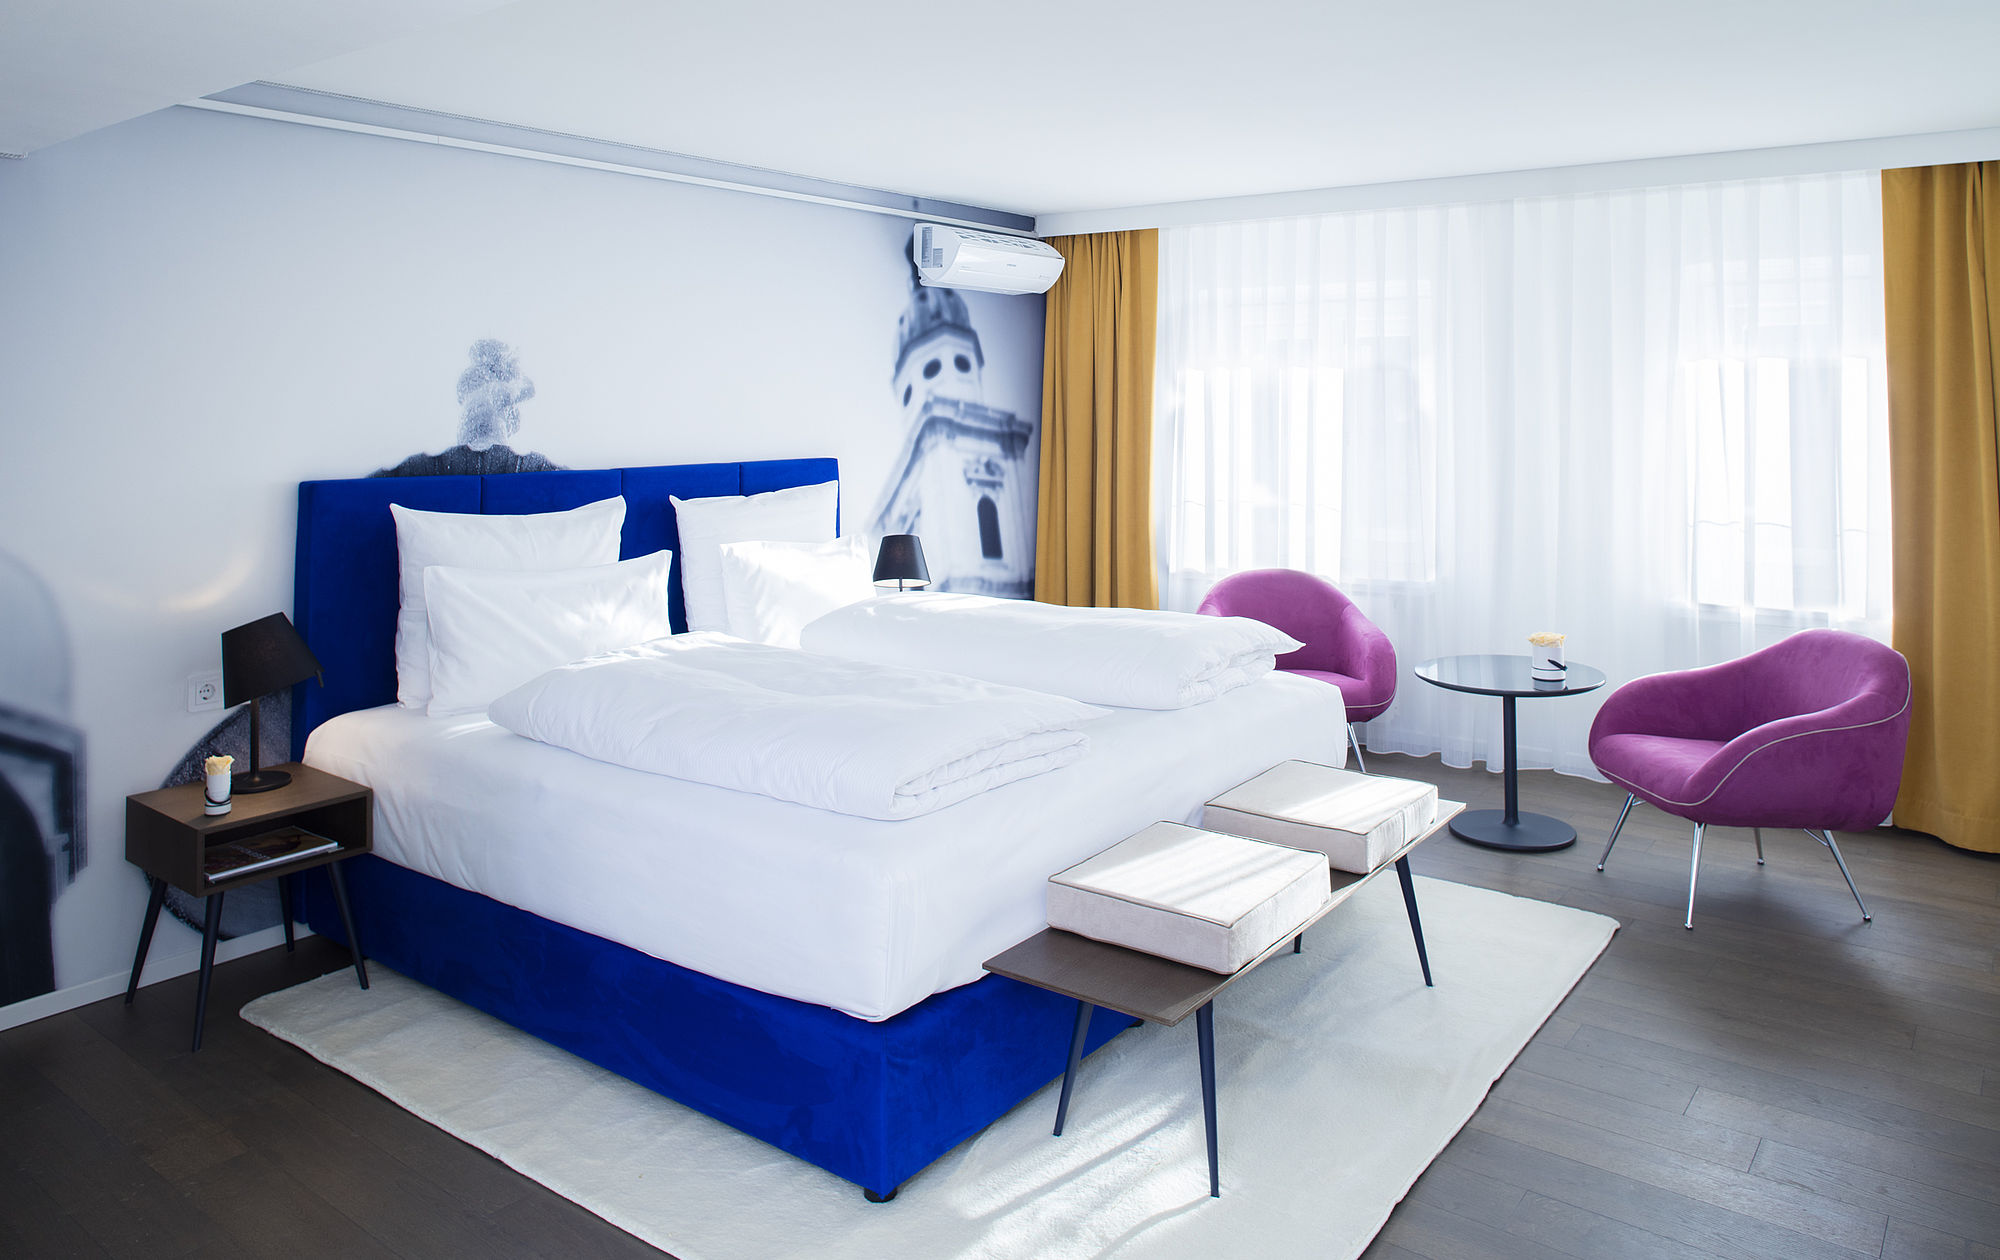 Stilvoll eingerichtete Junior Suite im Hotel Stein im Salzburger Zentrum